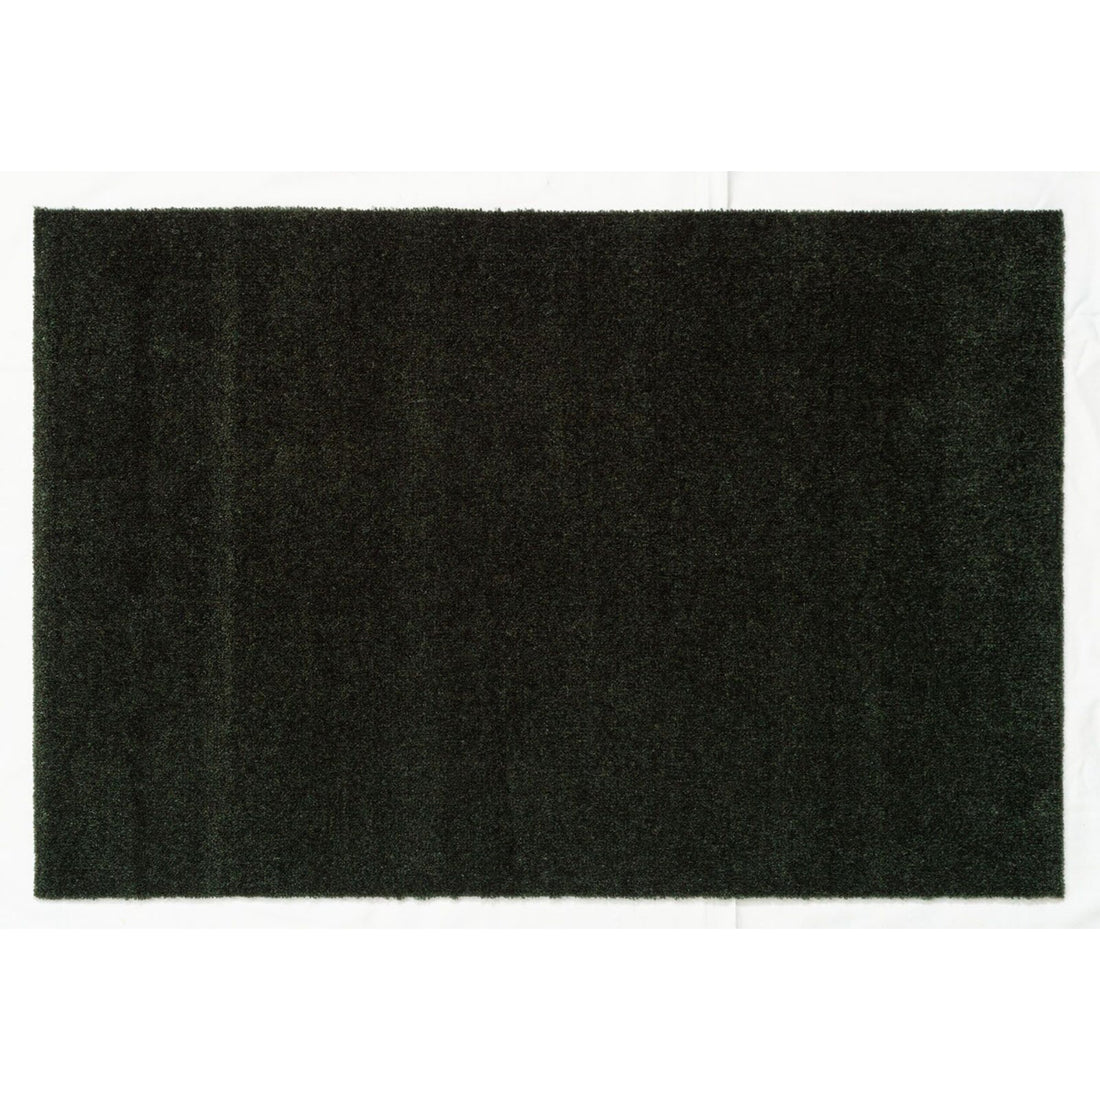 Mate de piso 90 x 130 cm - cor de cor/verde escuro